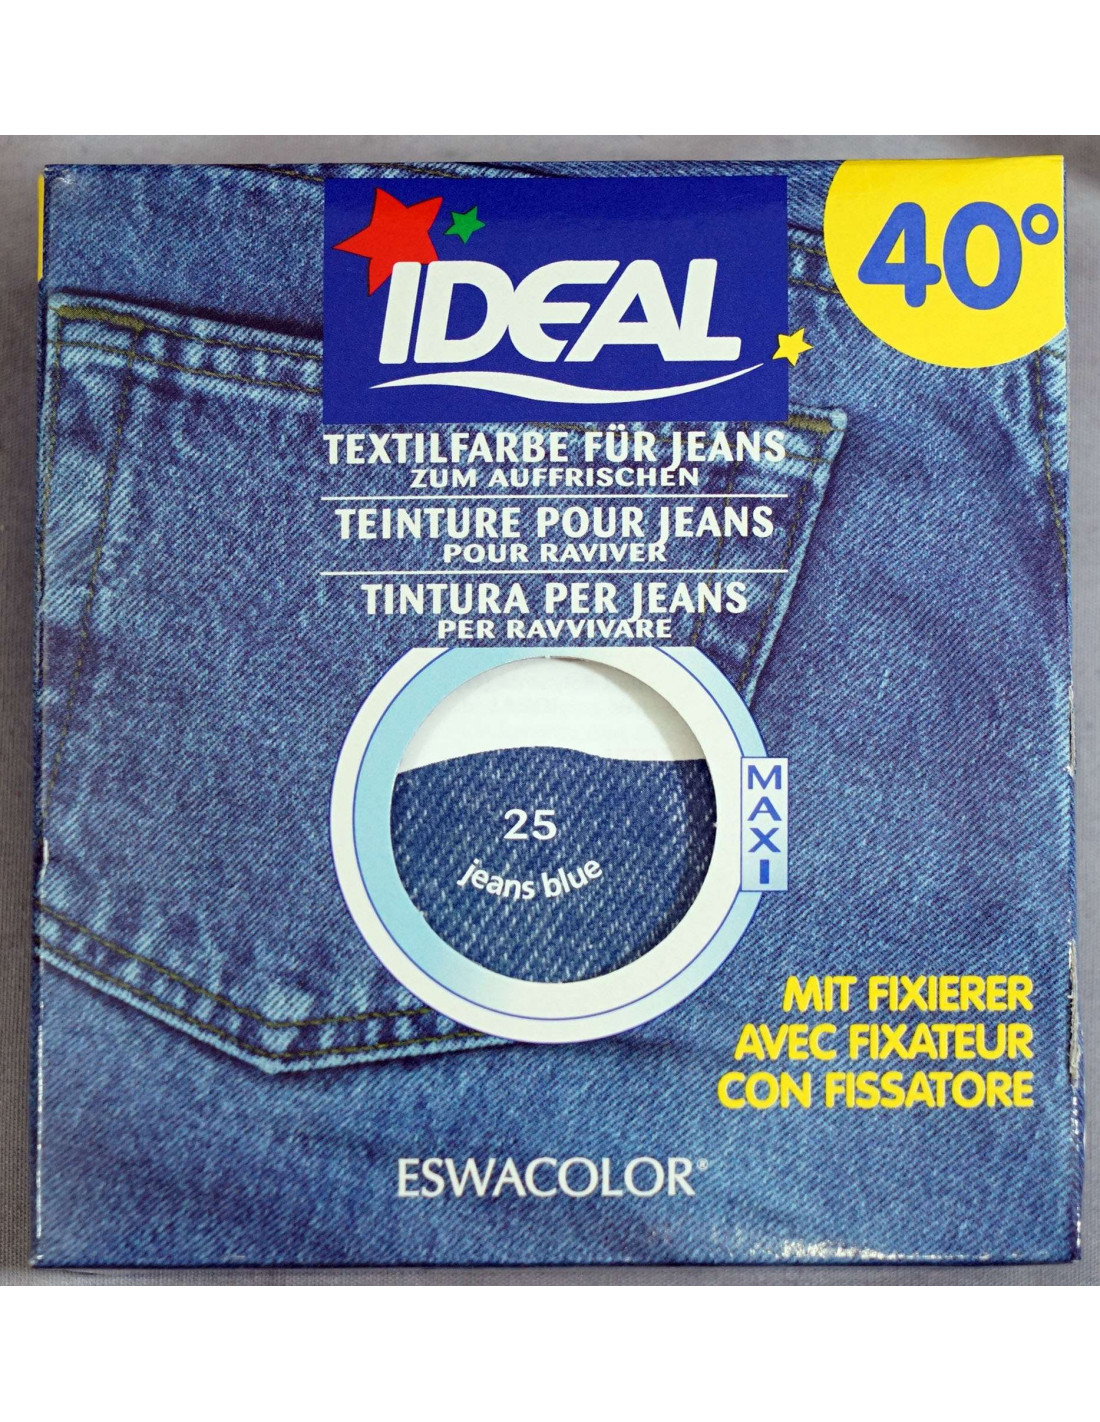 Test Teinture IDEAL pour jeans - LiLou's Shark Le Blog